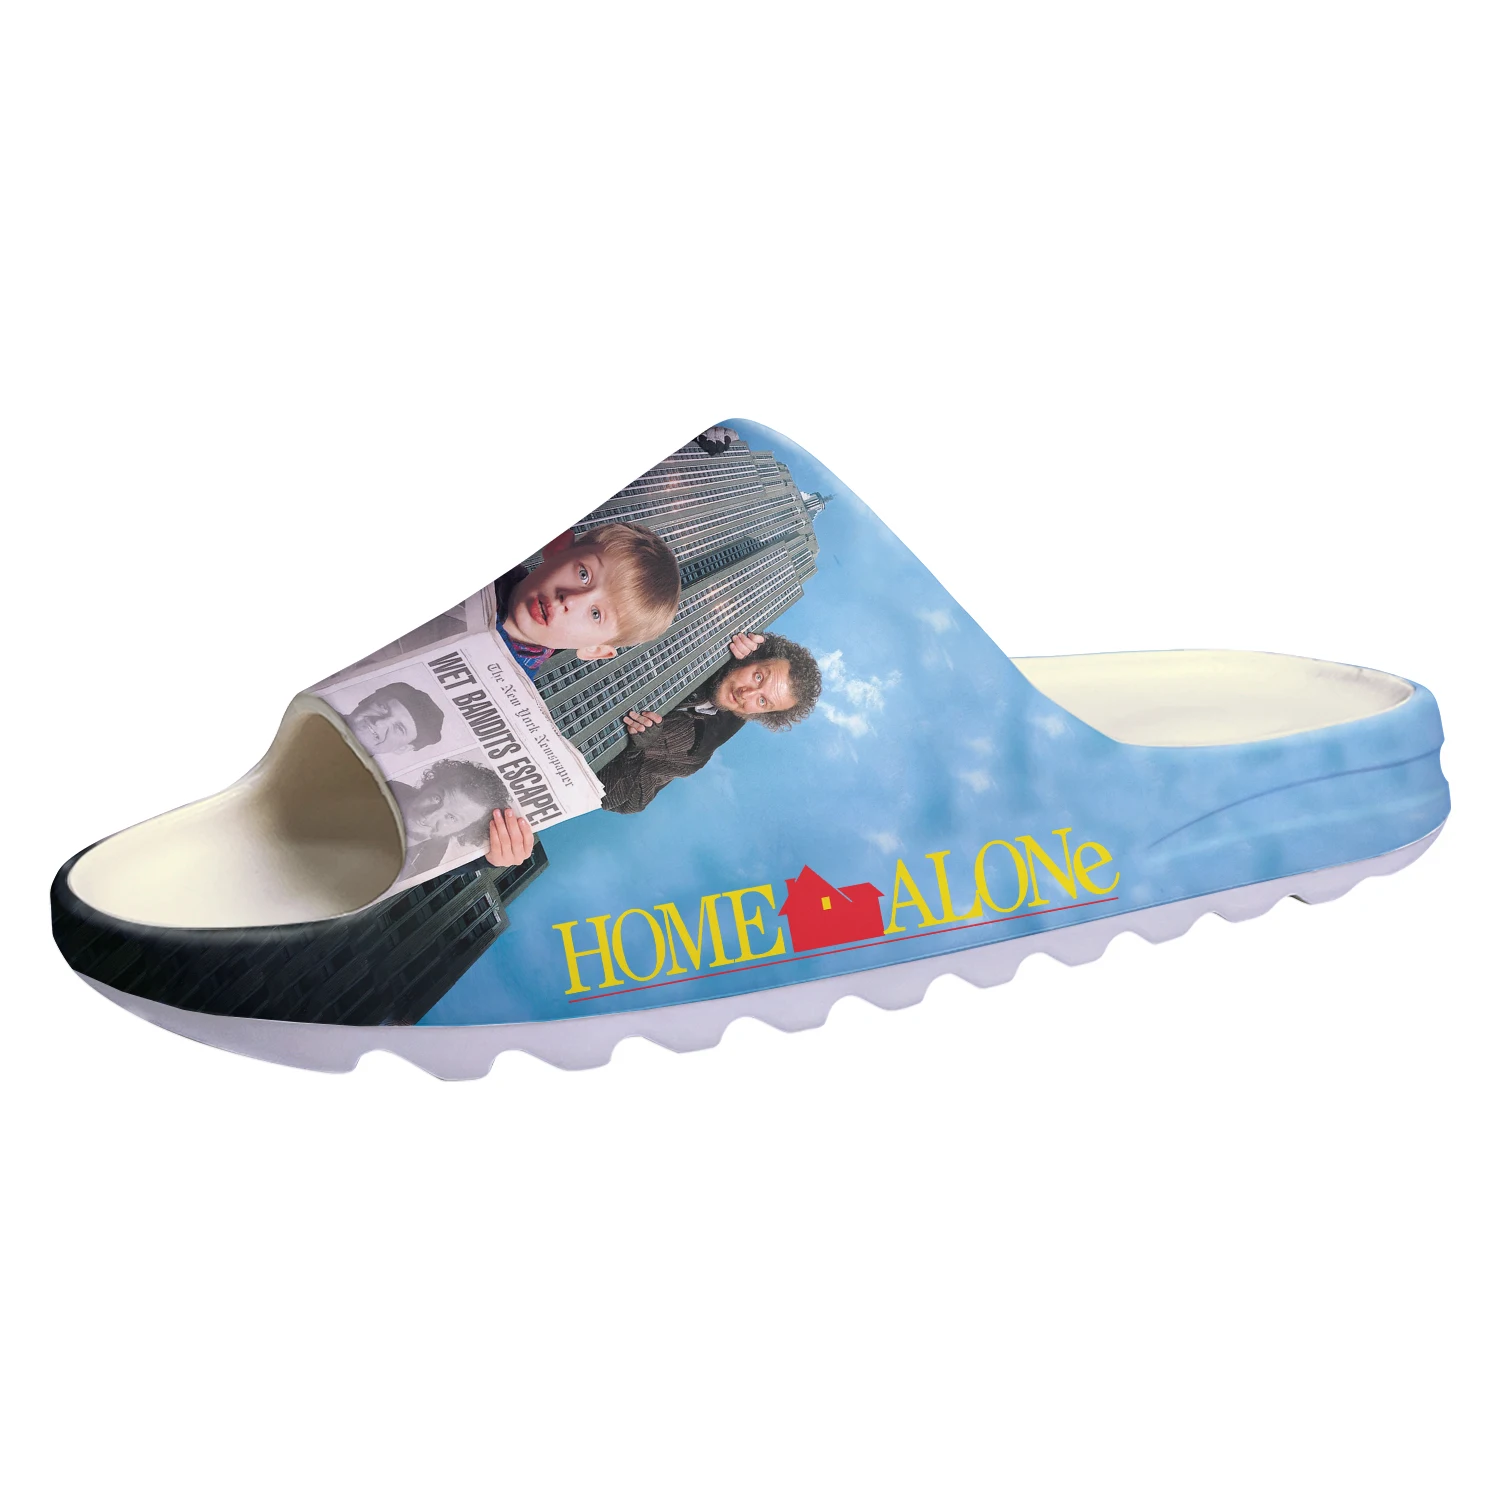 

Сандалии Кевин шаг на водной подошве, мягкие слиперы для дома, обувь для подростков, индивидуальные Тапочки